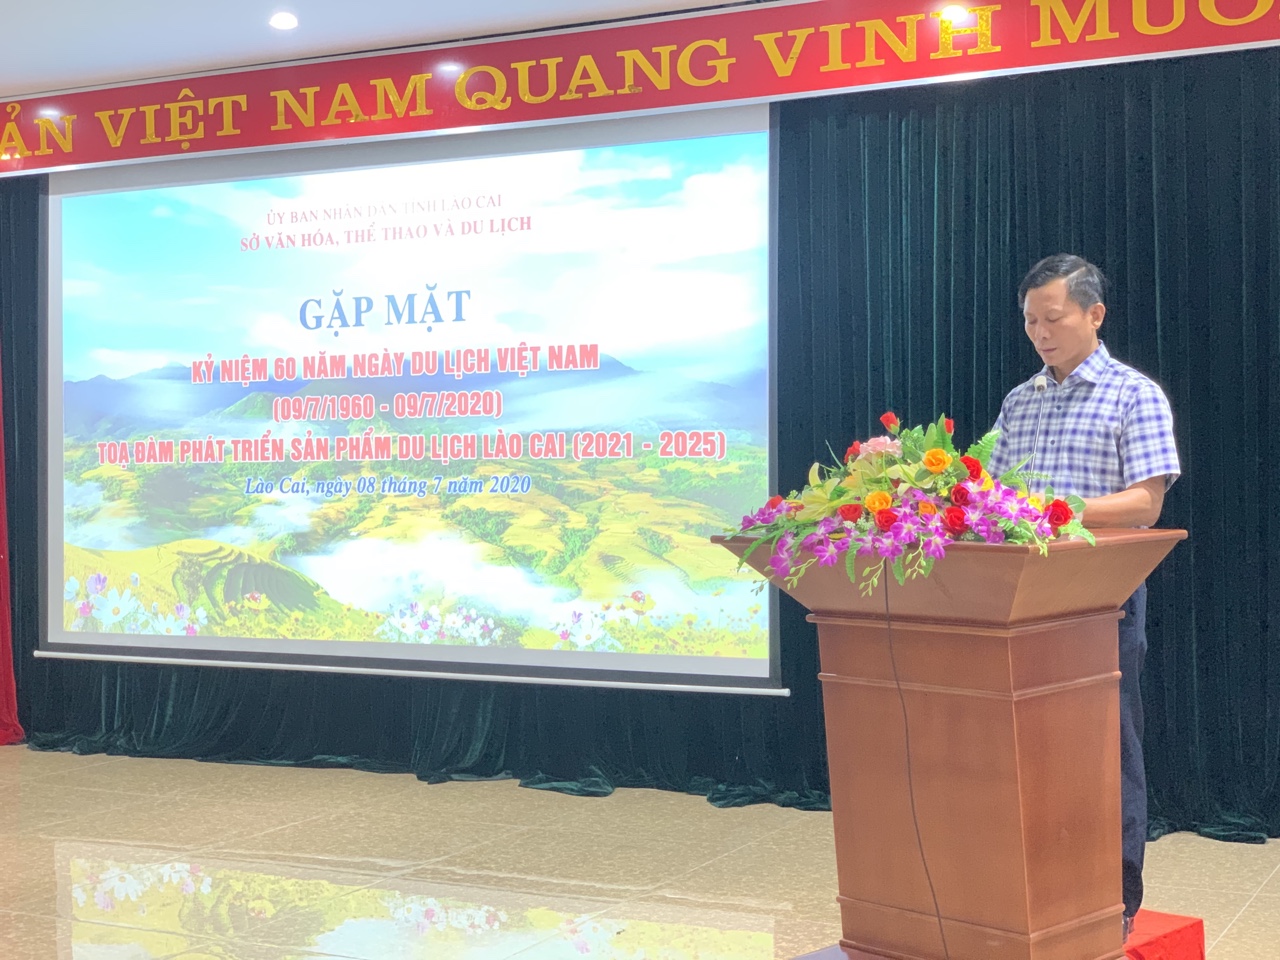 Gặp mặt kỷ niệm 60 năm ngày thành lập ngành du lịch Việt Nam và tọa đàm phát triển sản phẩm du lịch Lào Cai giai đoạn 2021-2025